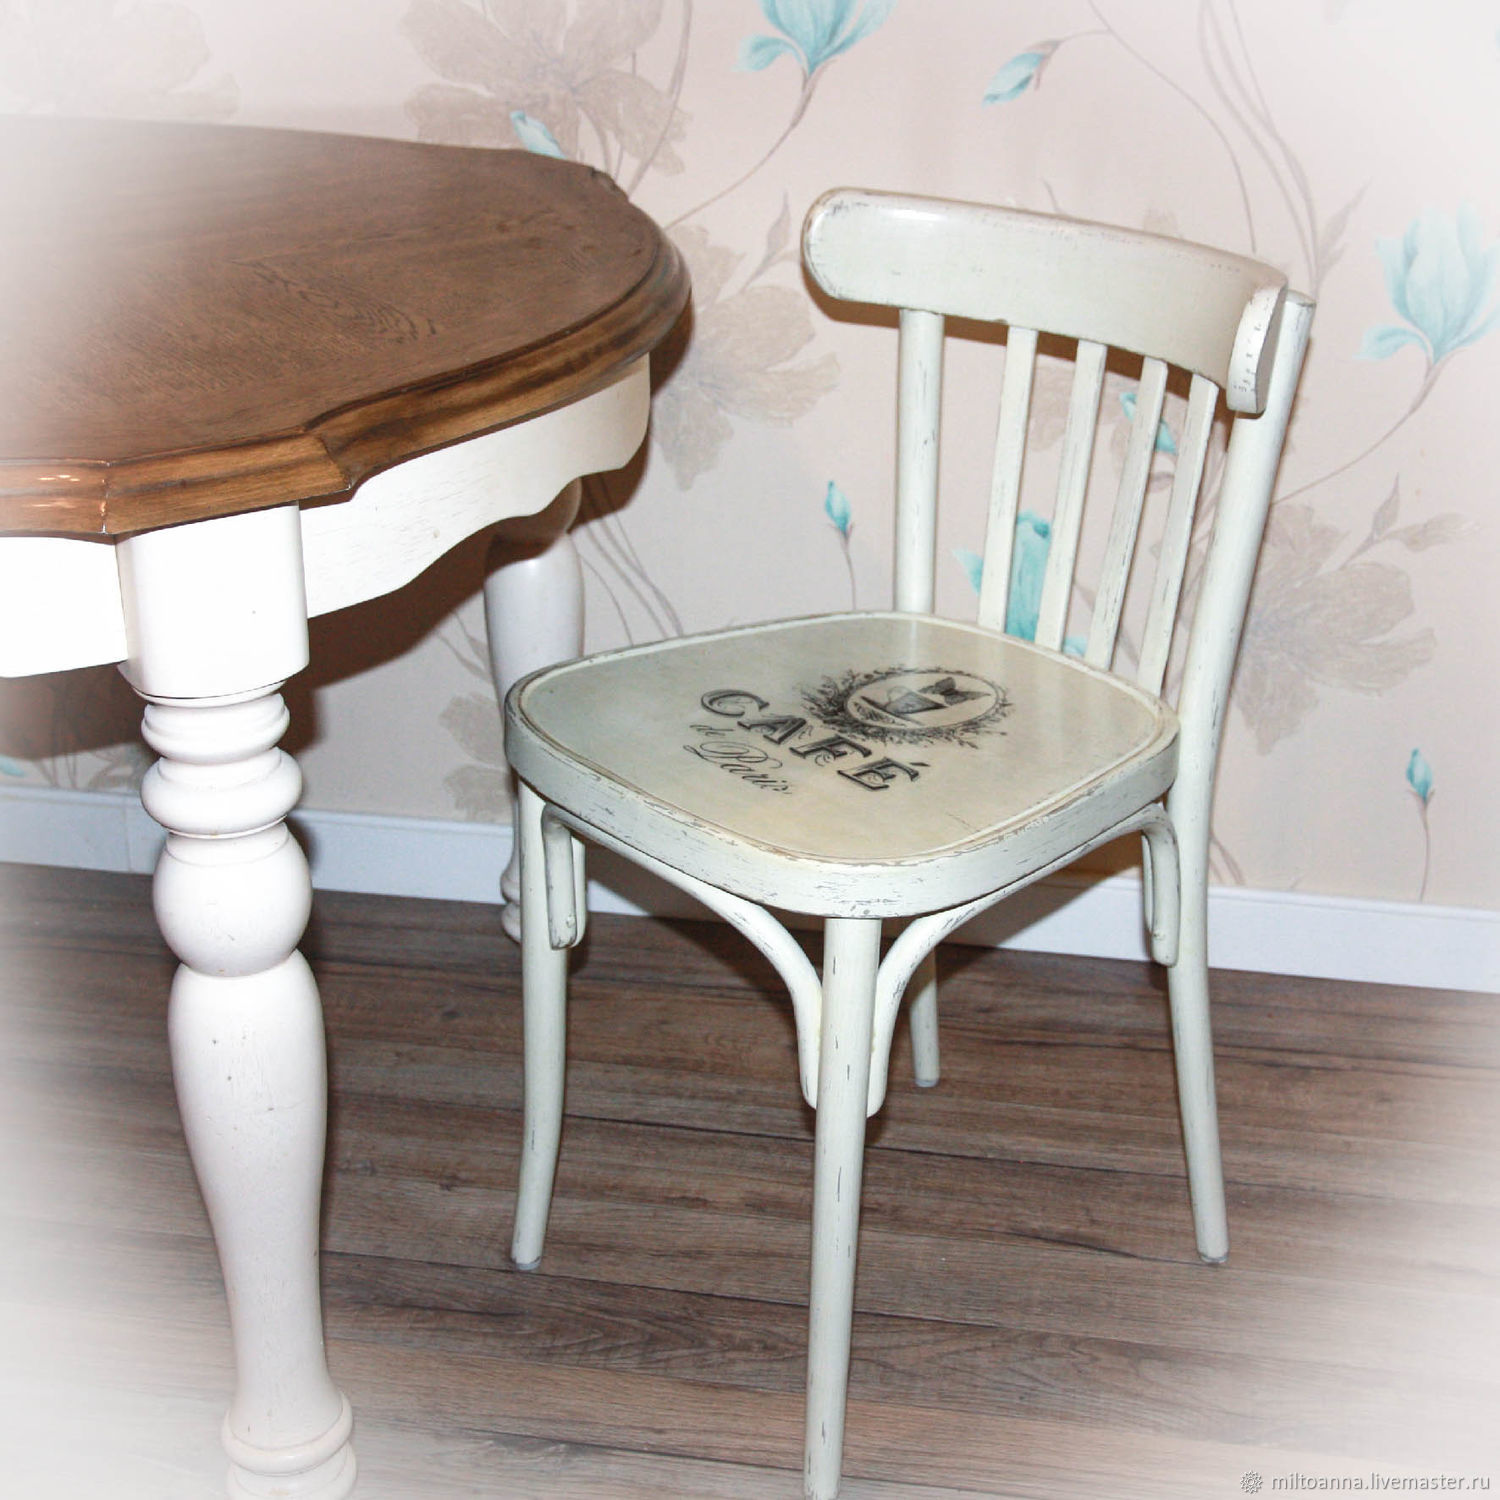 Декупаж мебели: декорируем деревянный стульчик